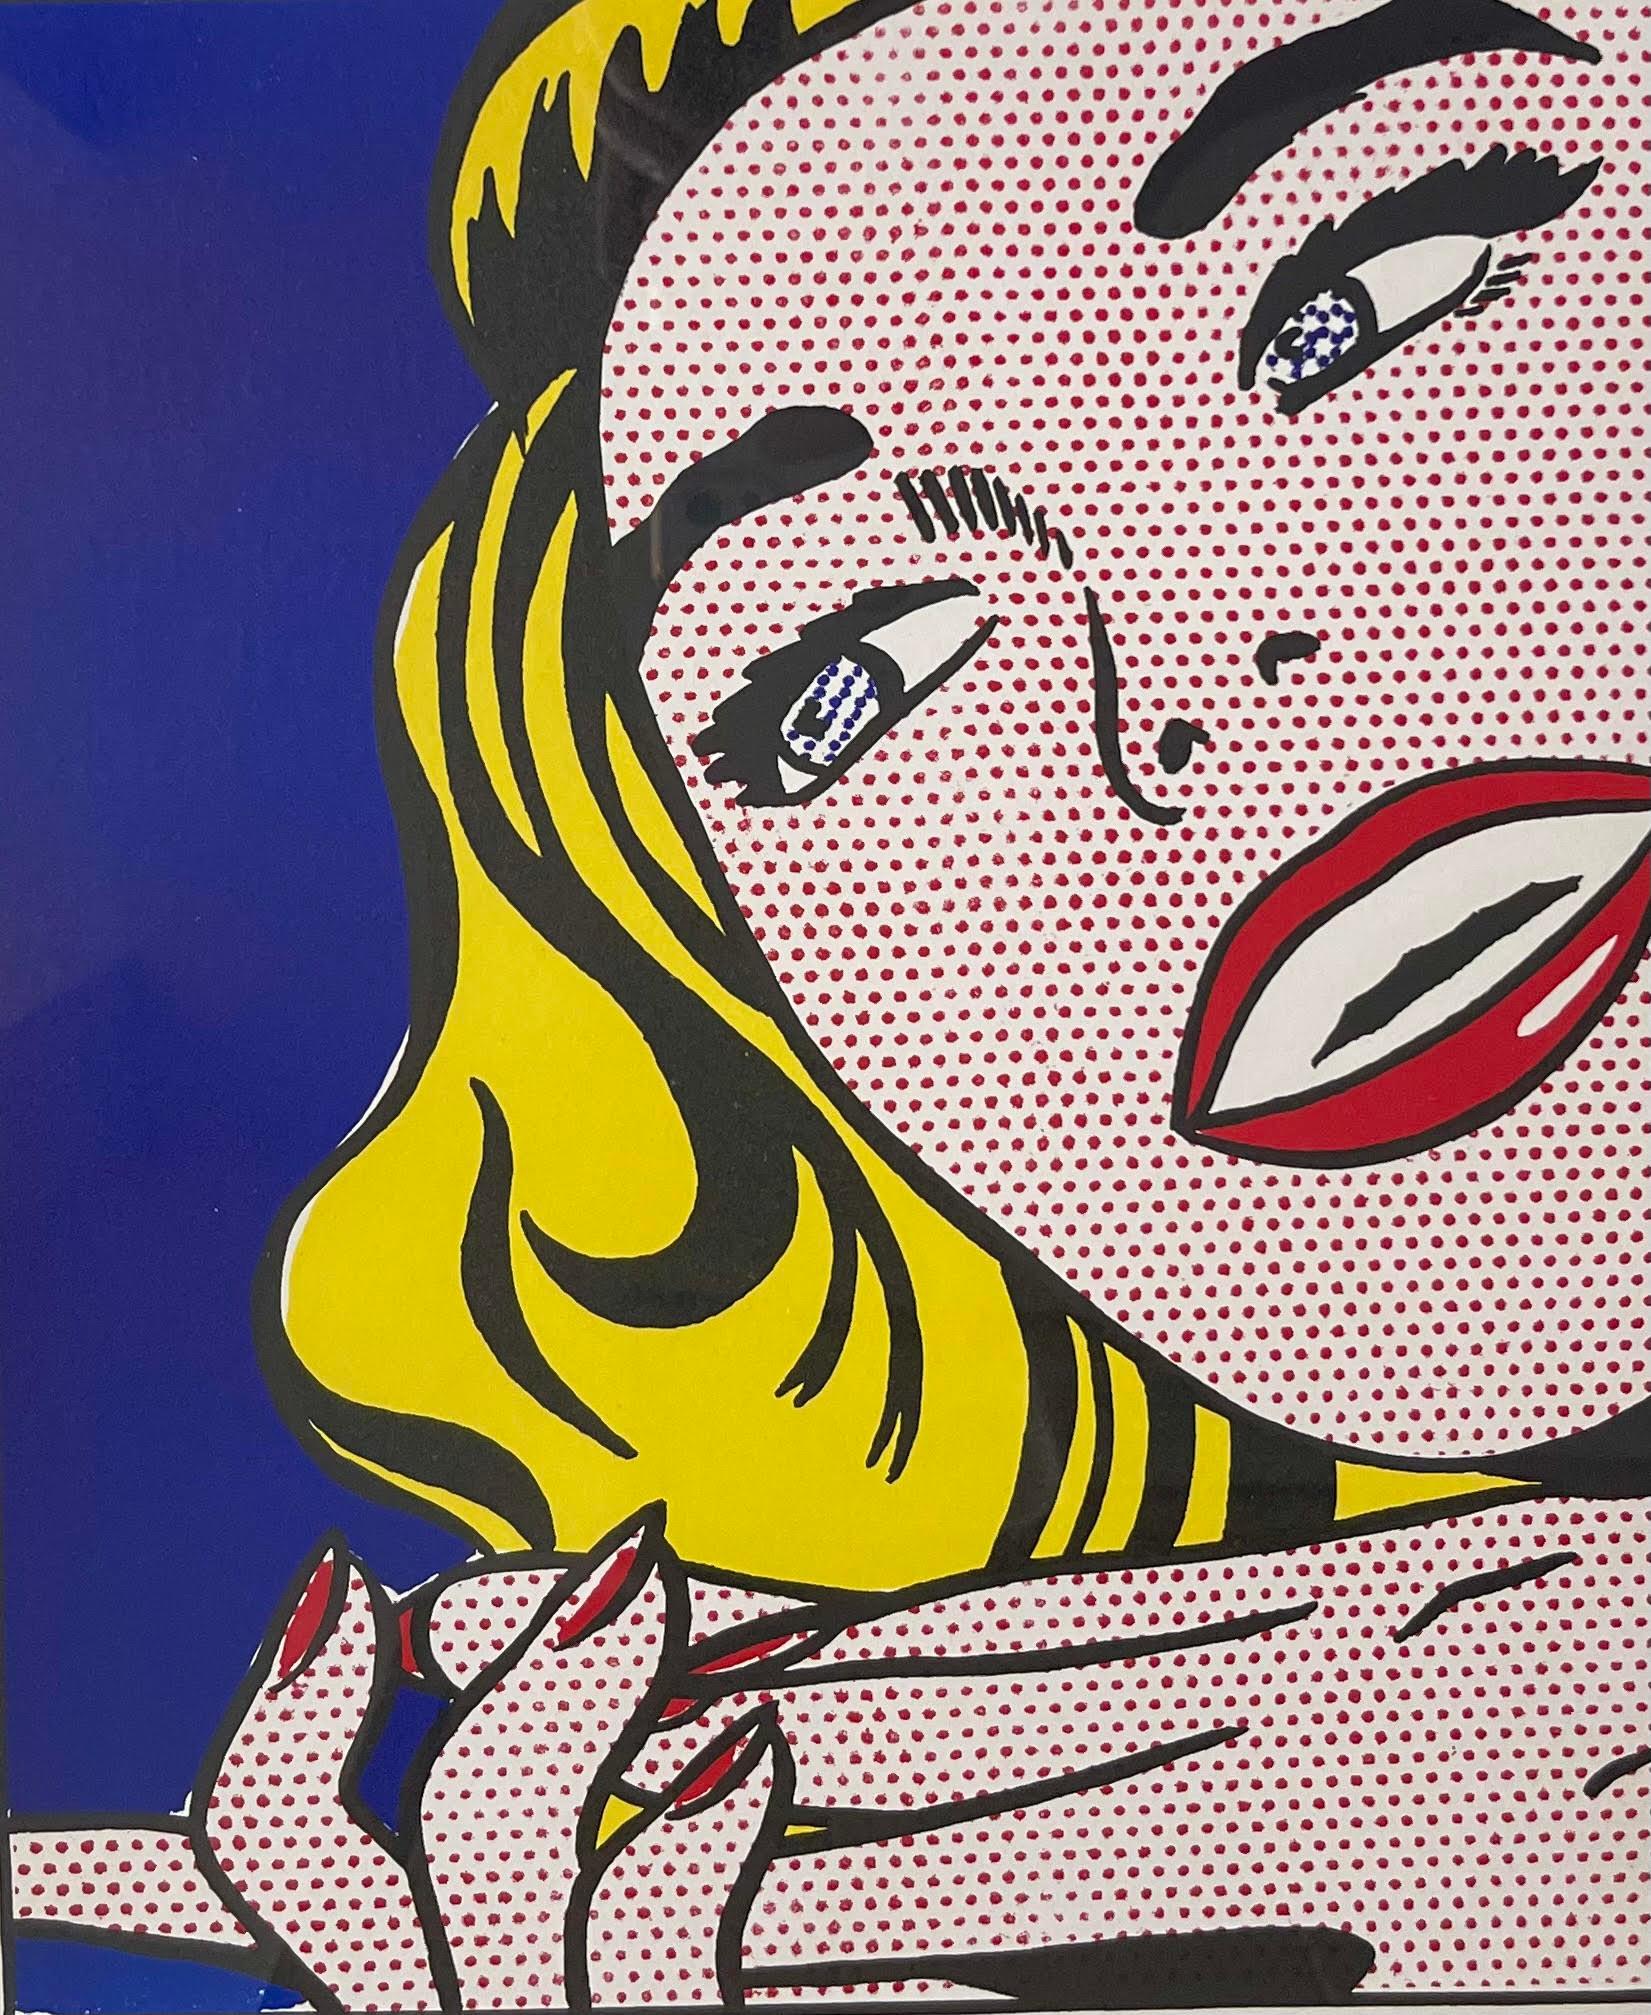 Roy Lichtenstein
Mädchen mit Sprühdose (handsignierte Deluxe-Ausgabe der 1-Cent-Life-Mappe, aus dem Nachlass des Künstlers Robert Indiana), 1964
Limitierte Auflage von 100 Stück (#85/100) 
Lithografie auf zwei Blättern auf Velinpapier (auf der